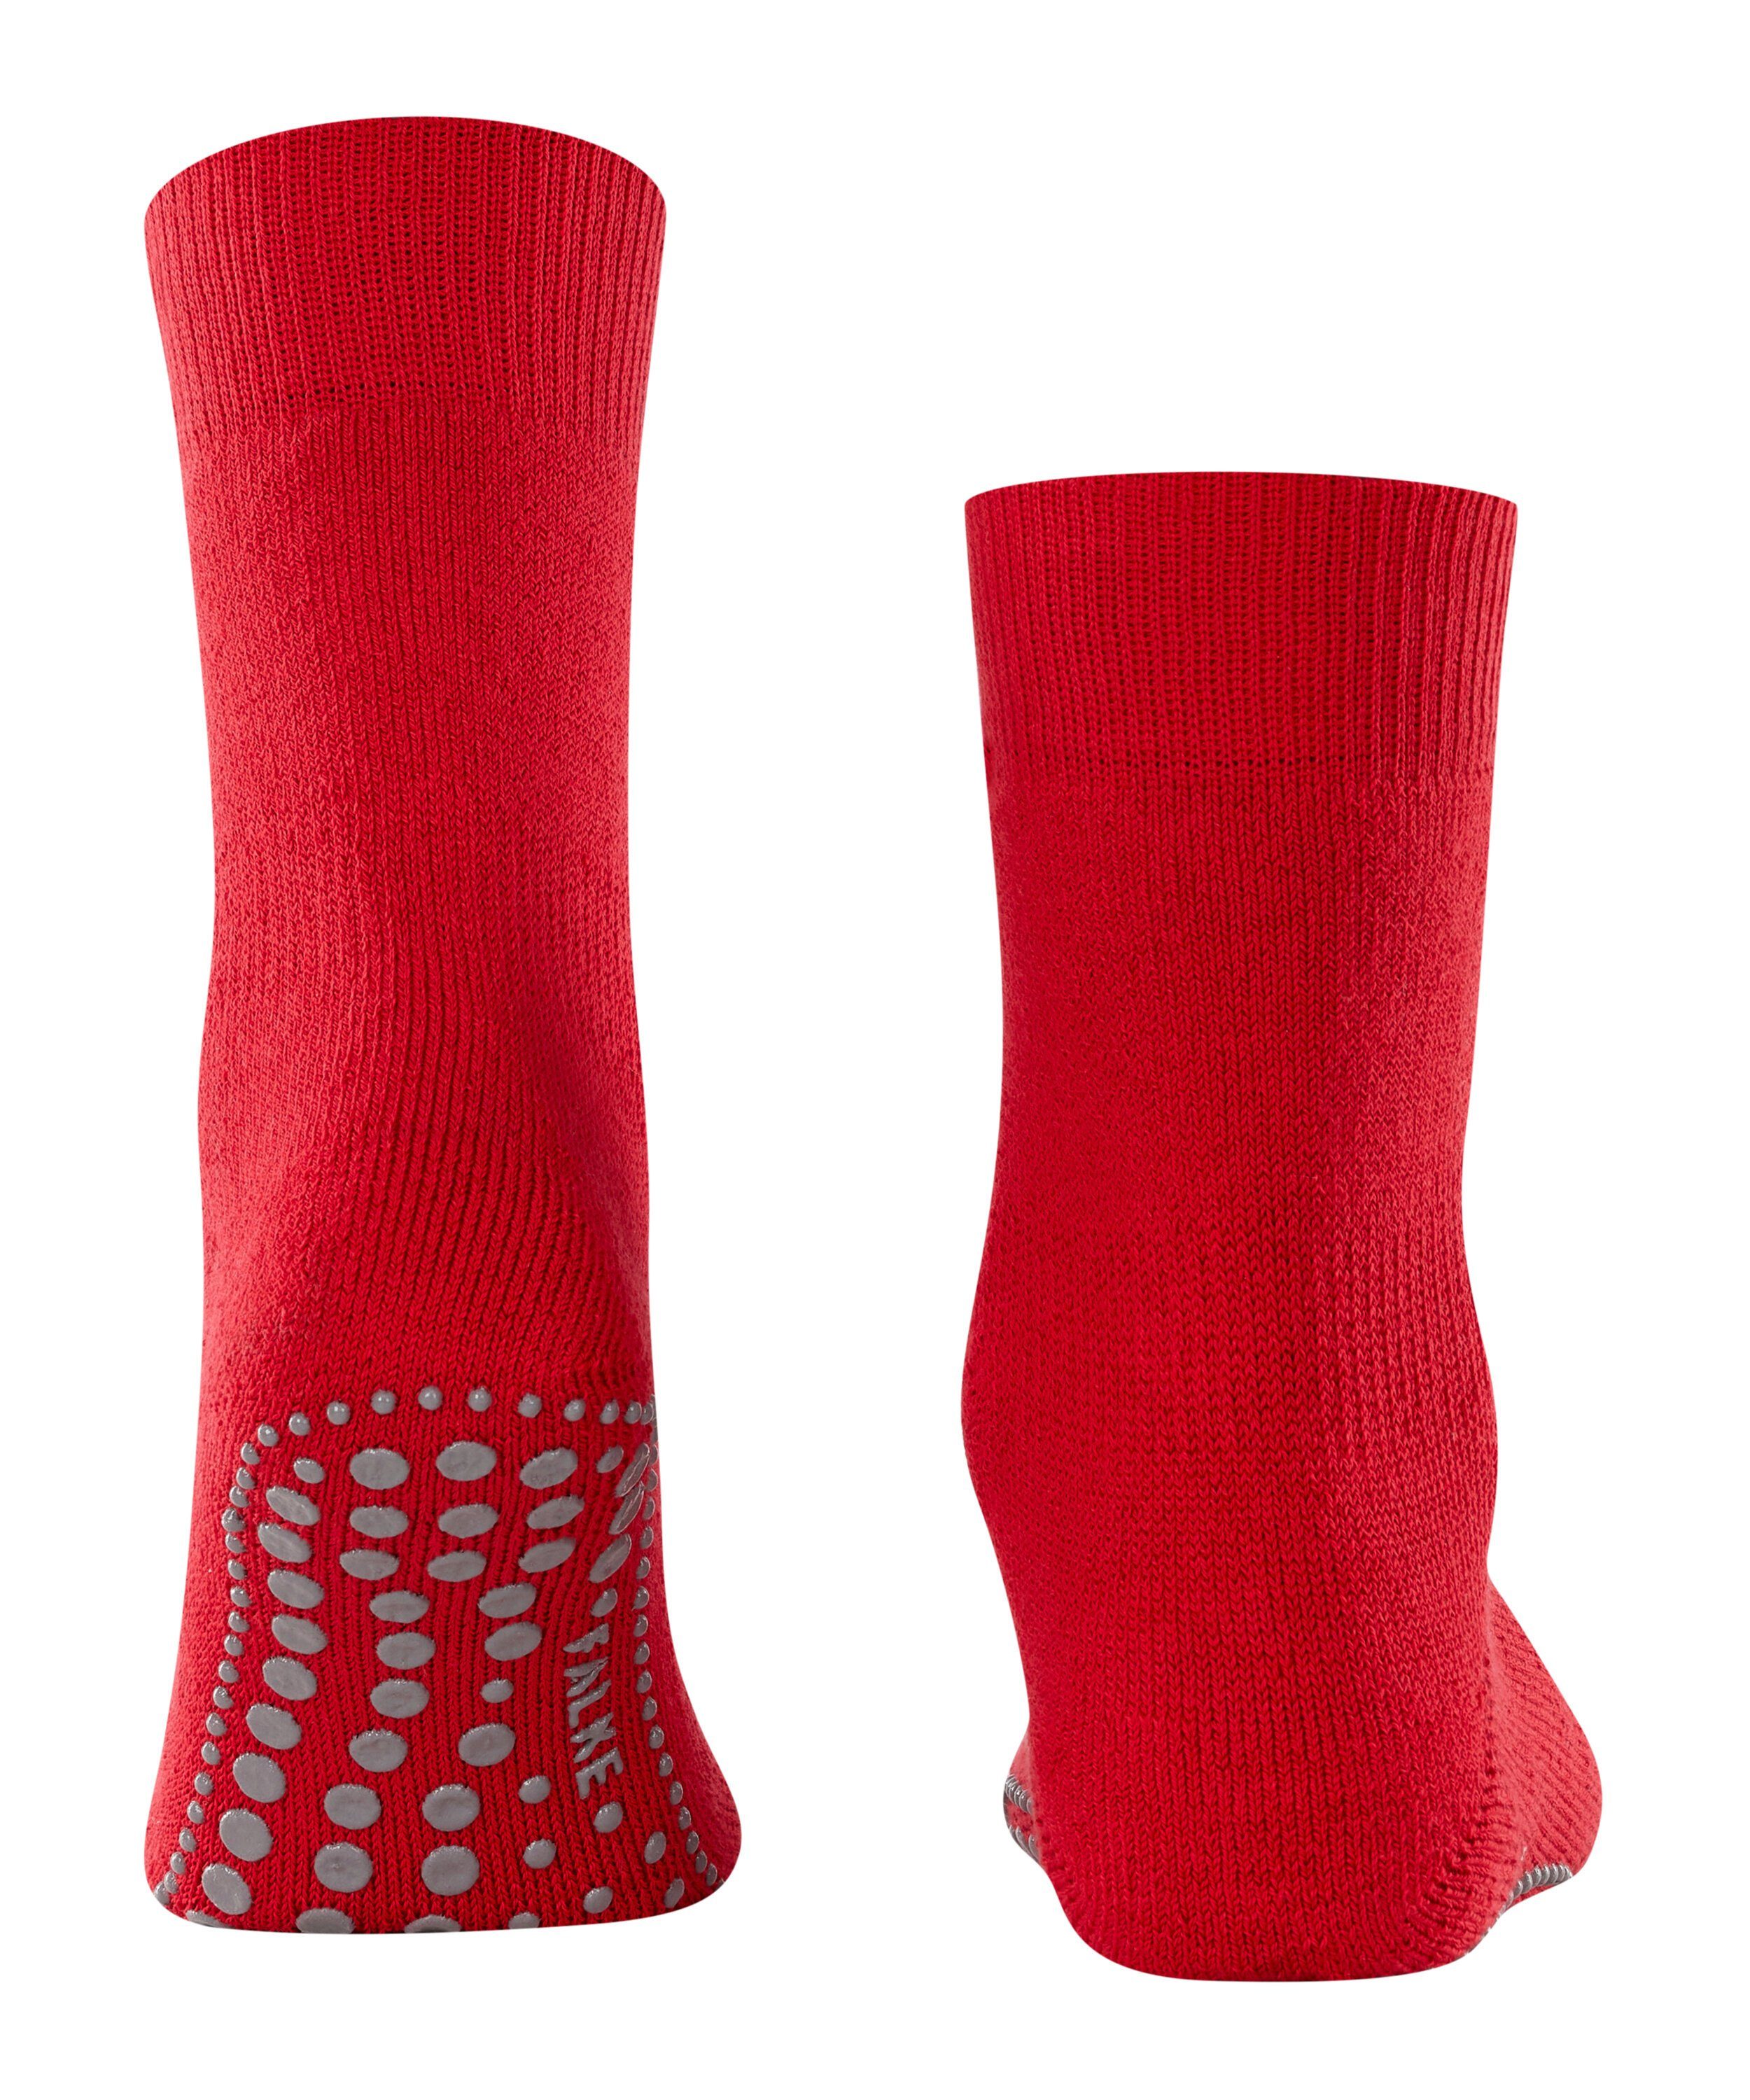 Socken (1-Paar) Homepads (8280) FALKE scarlet